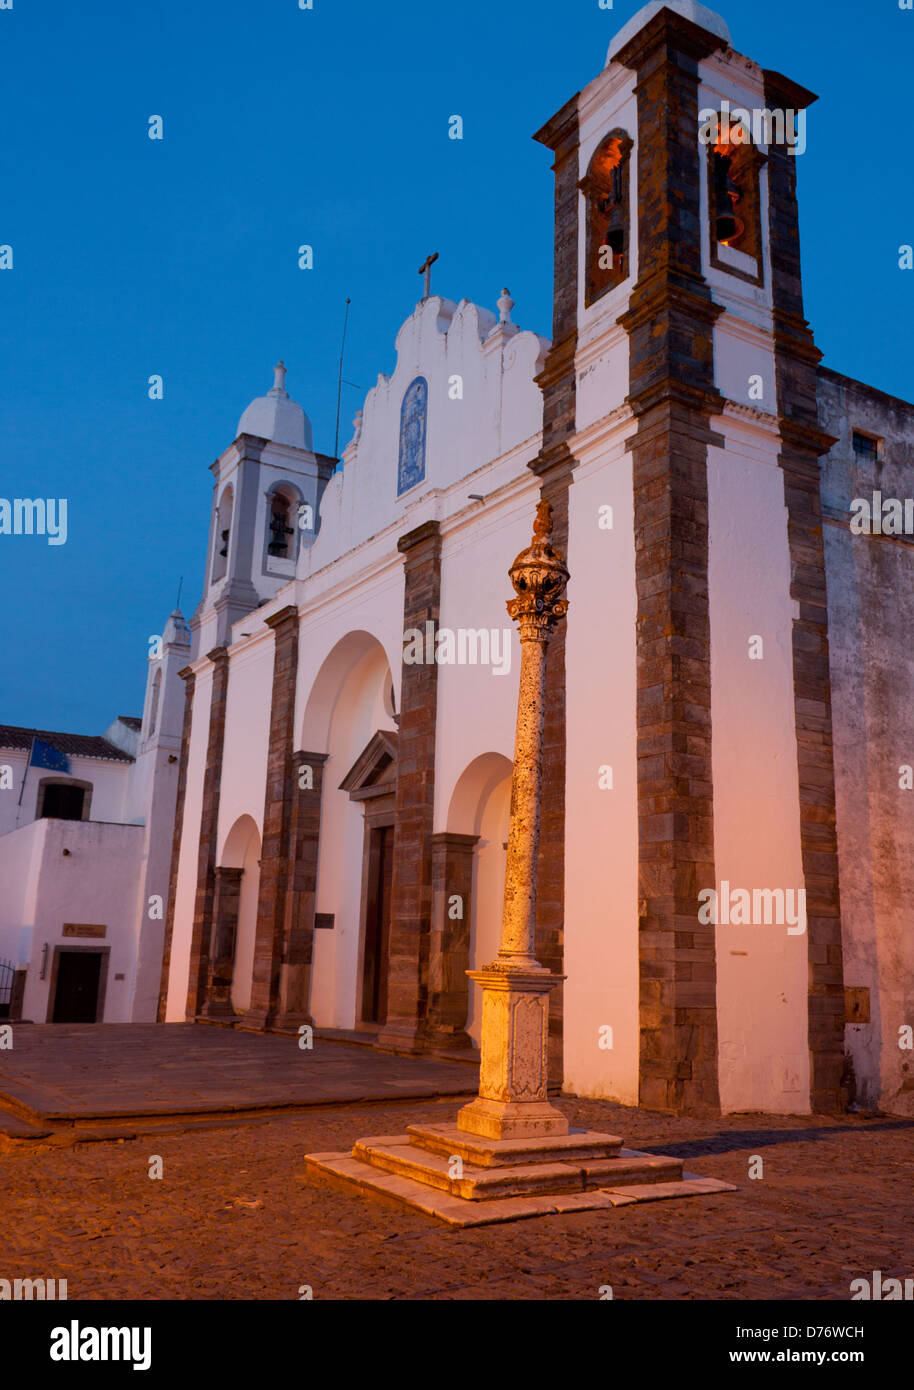 18e siècle pilori et Igreja Matriz (église paroissiale) au crépuscule / Crépuscule / soir / nuit Monsaraz Alentejo Portugal Banque D'Images